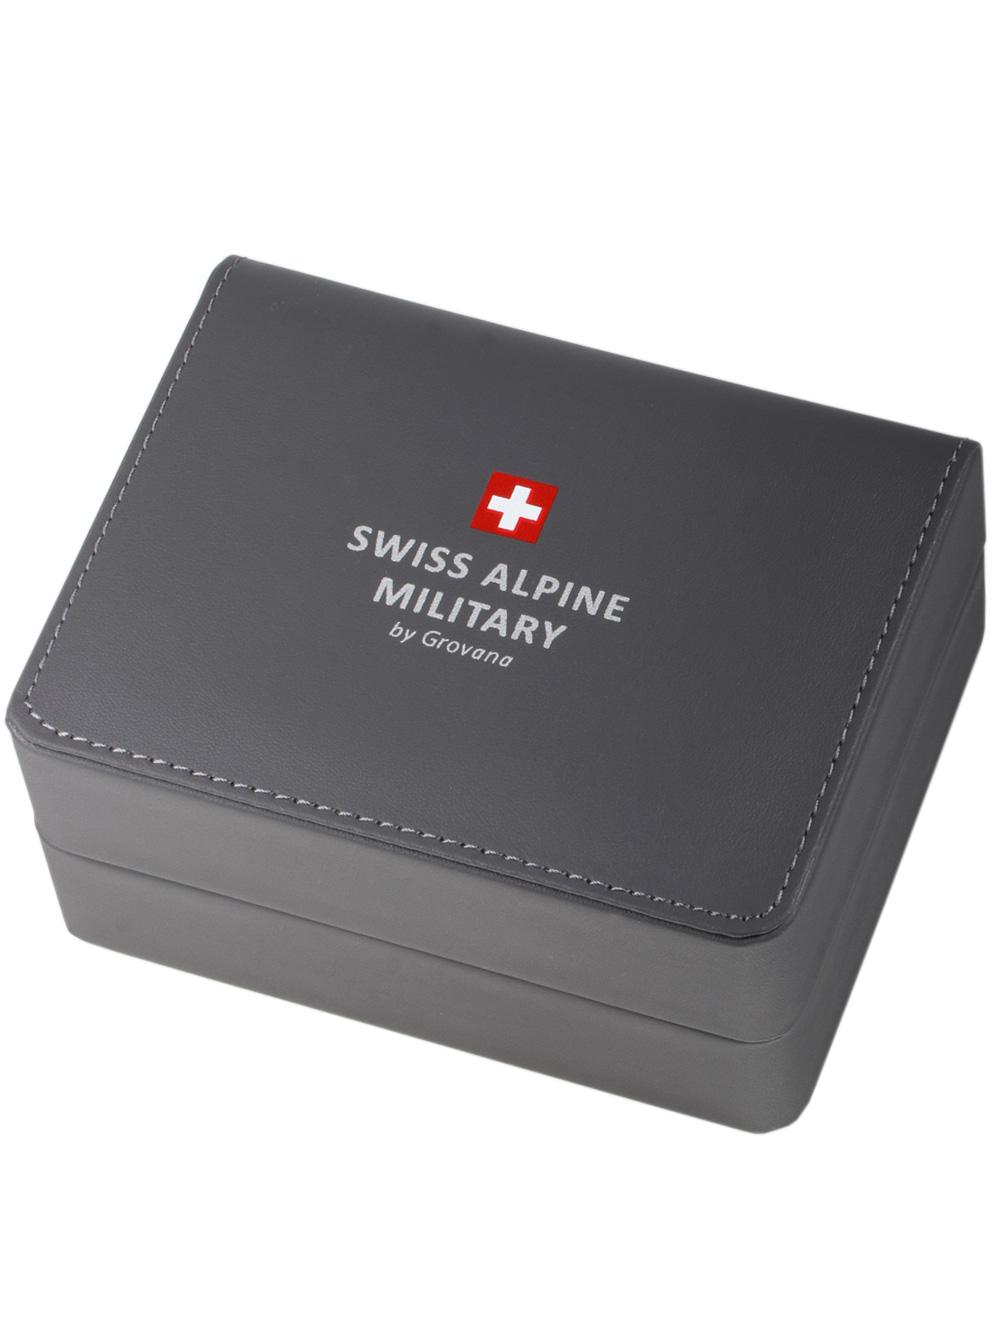 Zegarek męski Swiss Alpine Military 7095.2137